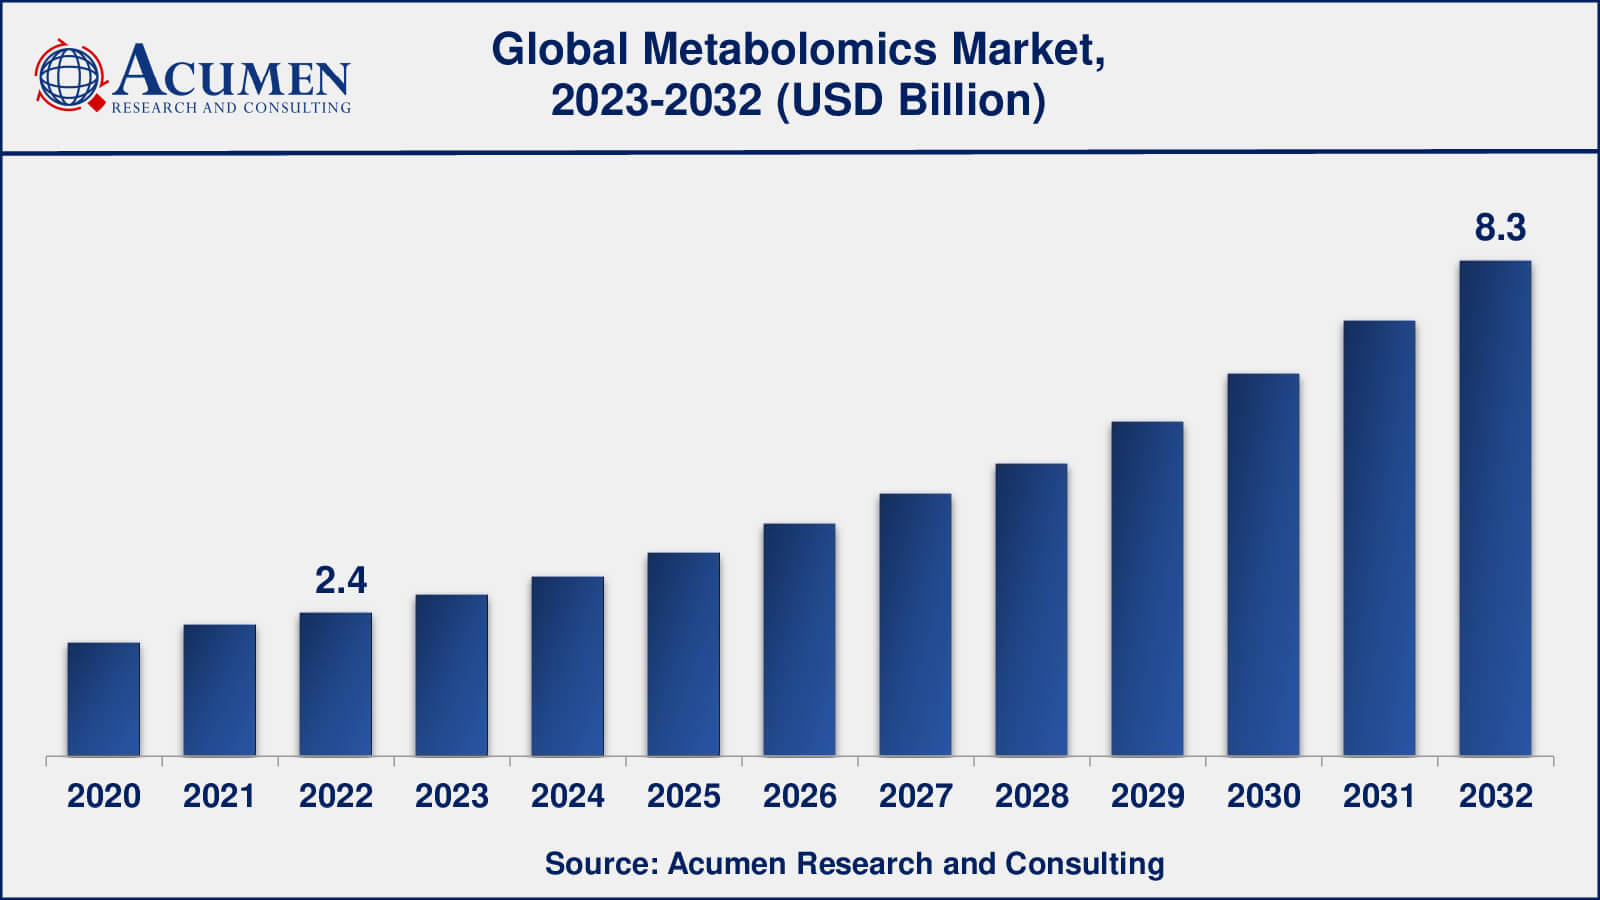 Global Metabolomics Market Dynamics